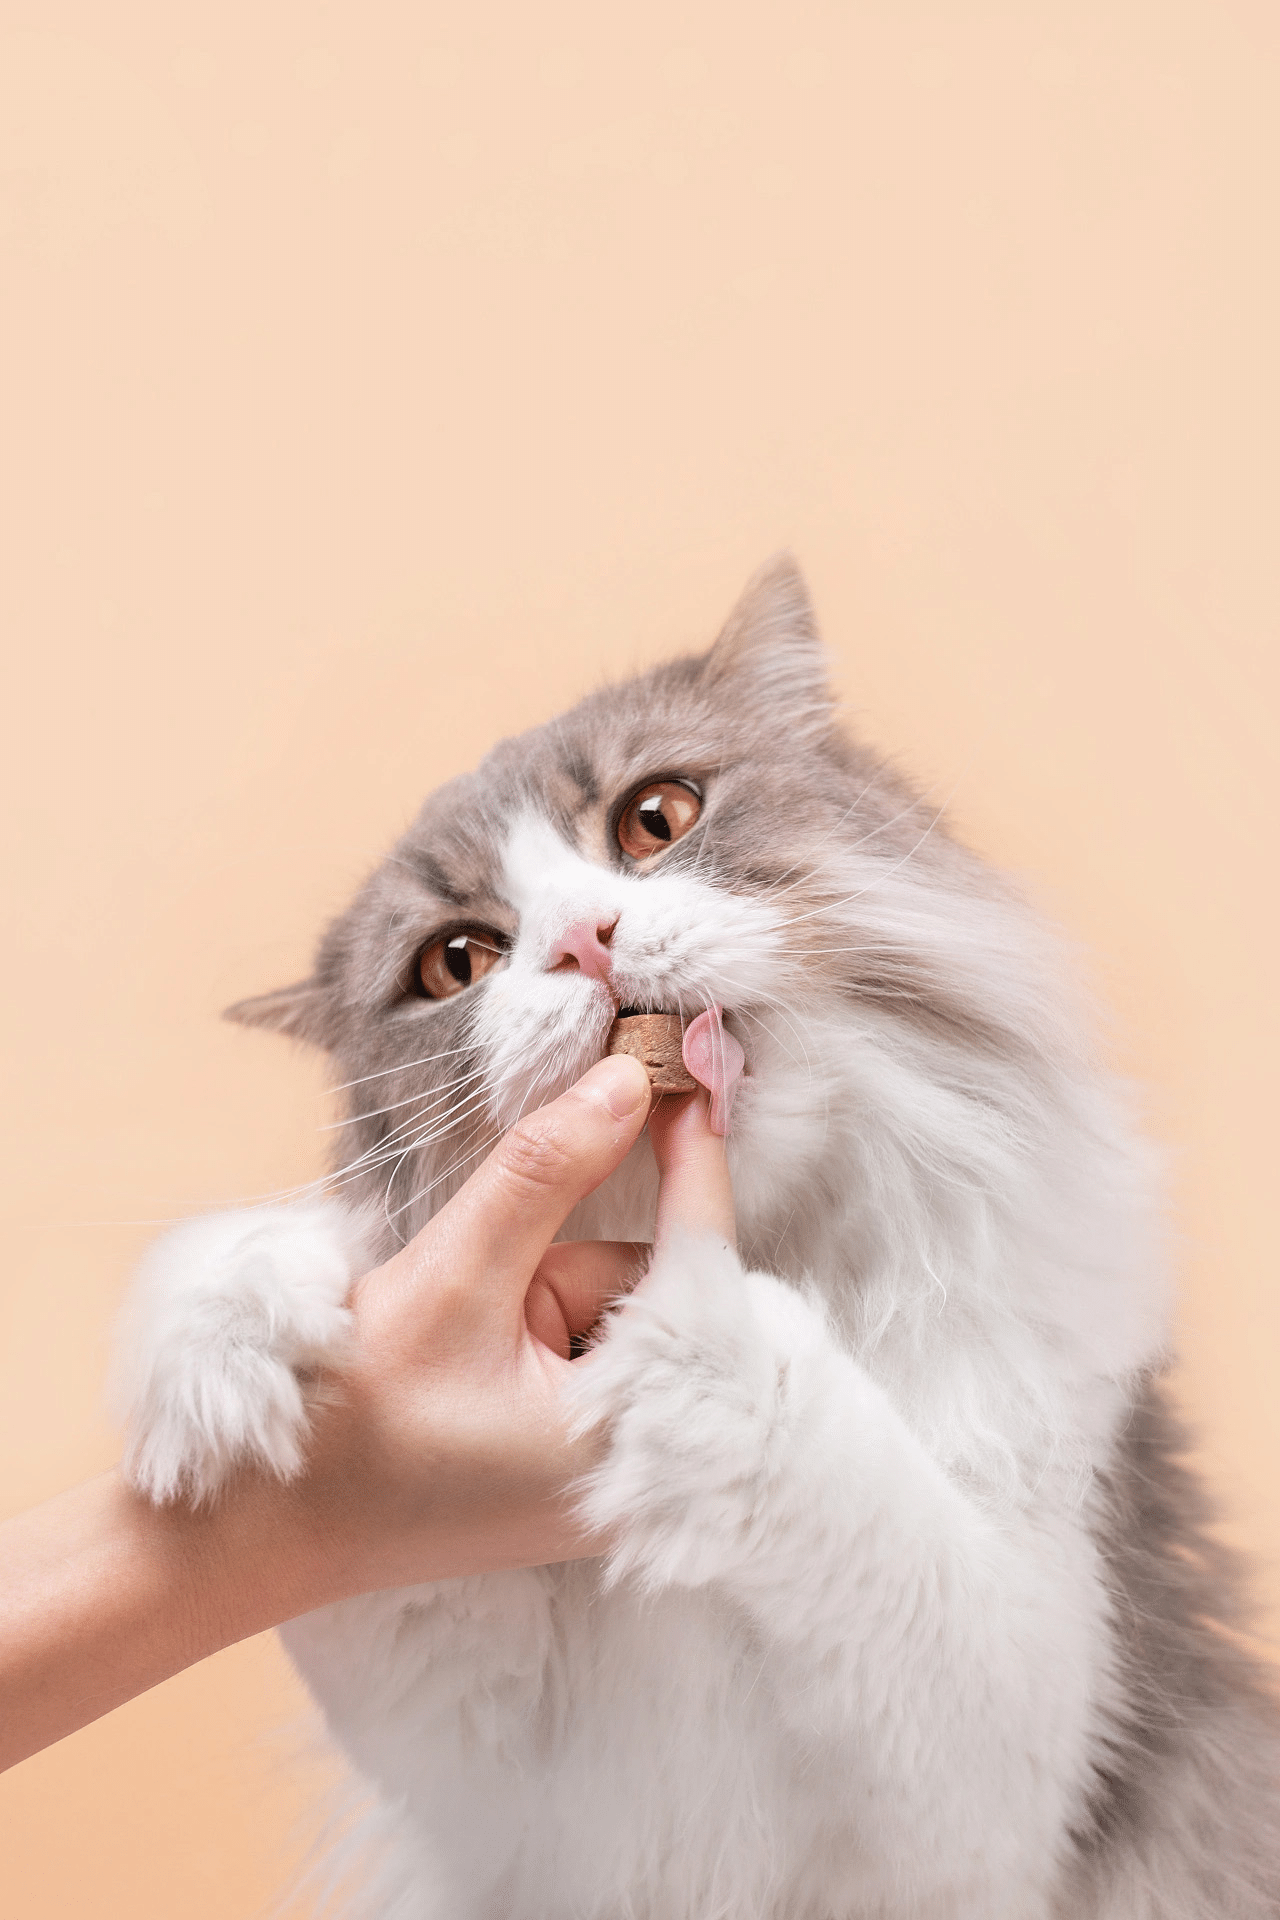 Heartbeating Signal, Dingdang Pet Snacks дозволять власникам насолоджуватися задоволенням від утримання котів (2)